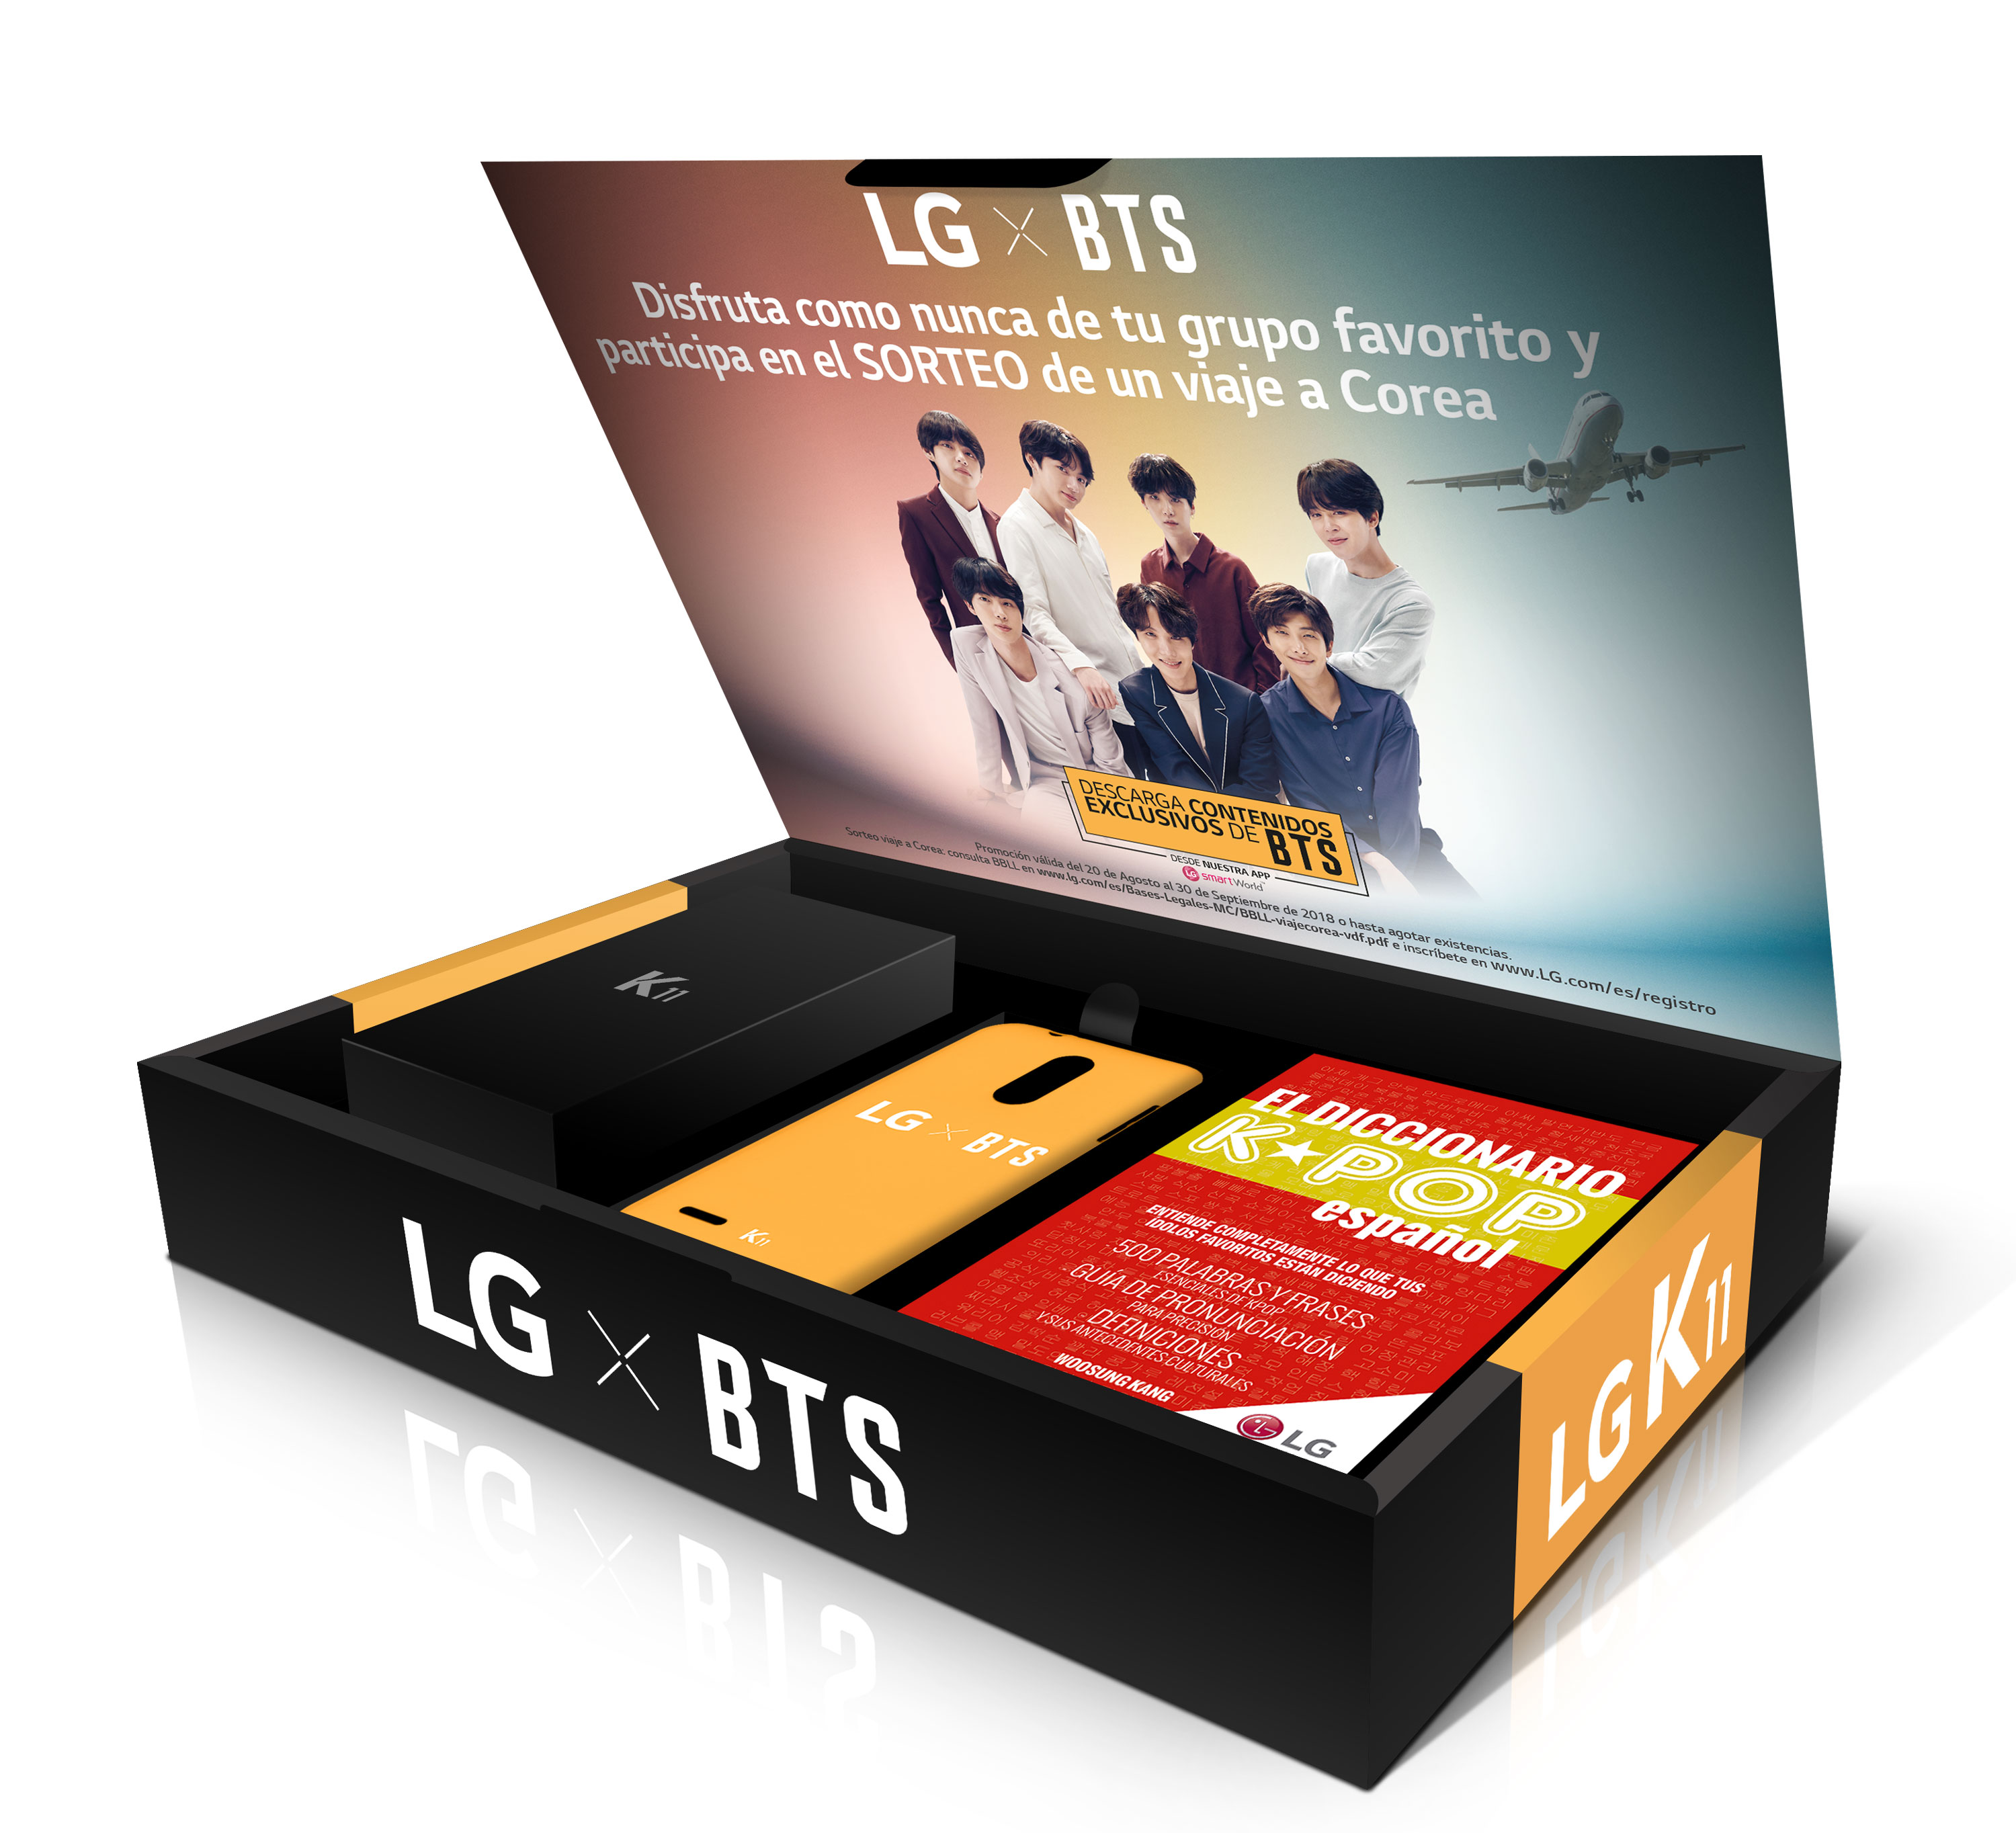 Vodafone presenta la versión del LG K11 con contenido exclusivo del grupo BTS
 